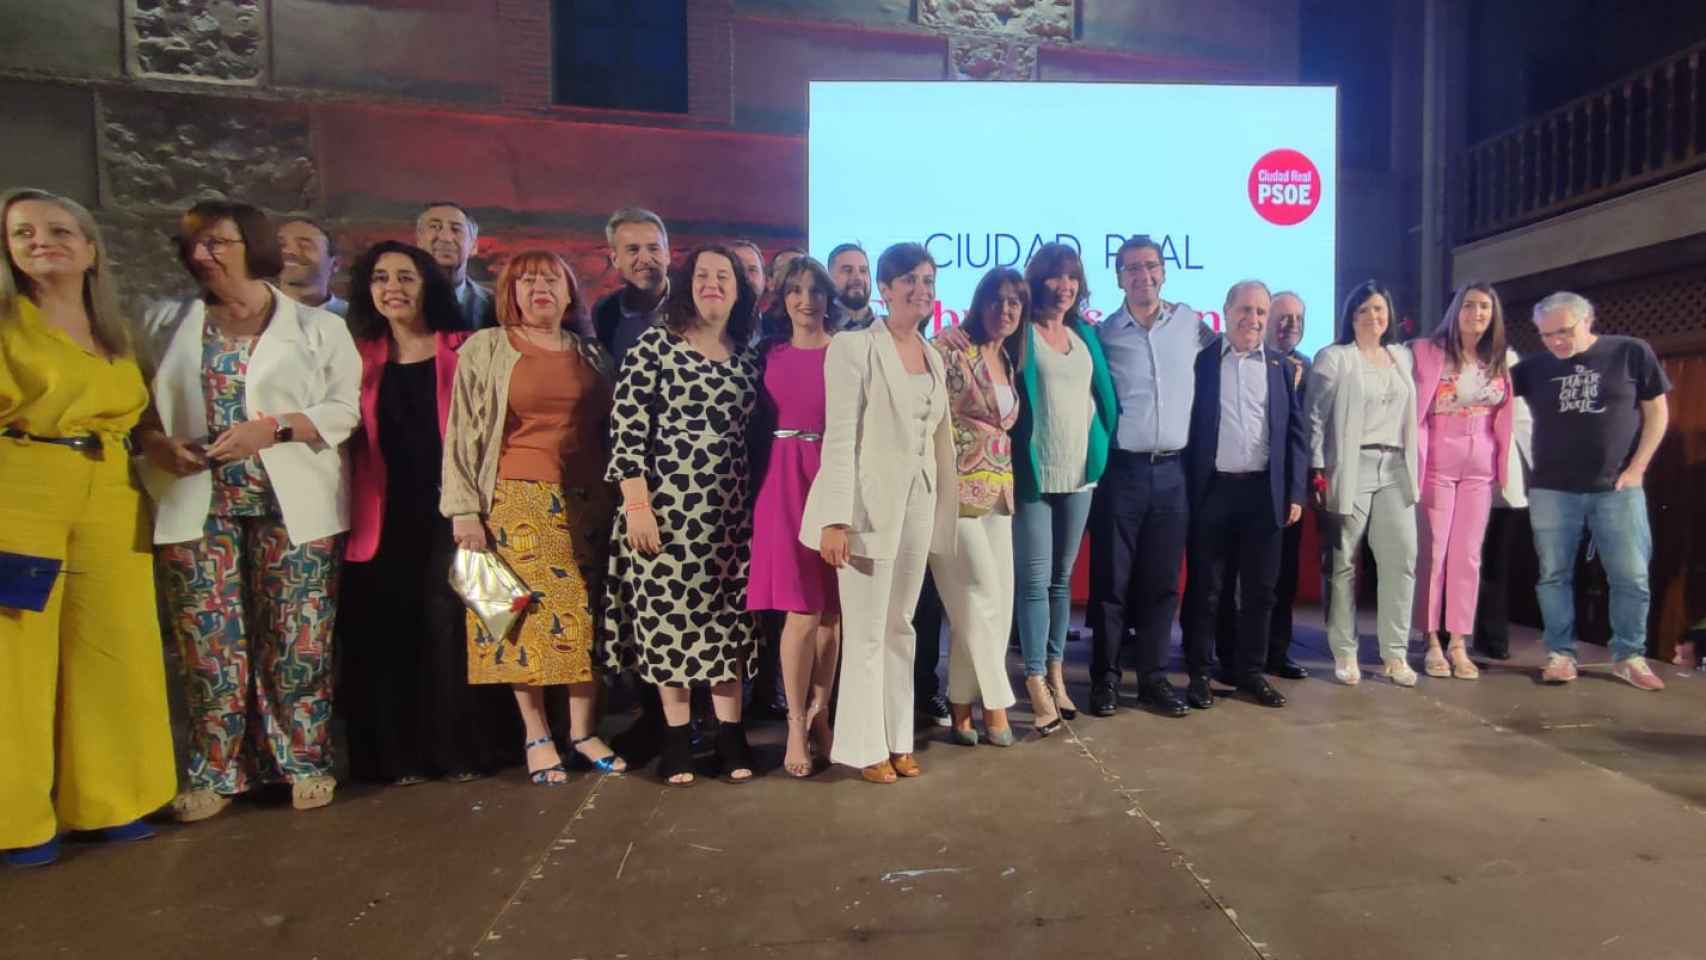 Presentación de la candidatura del PSOE a la Alcaldía de Ciudad Real. Foto: Twitter @isabelrguez.